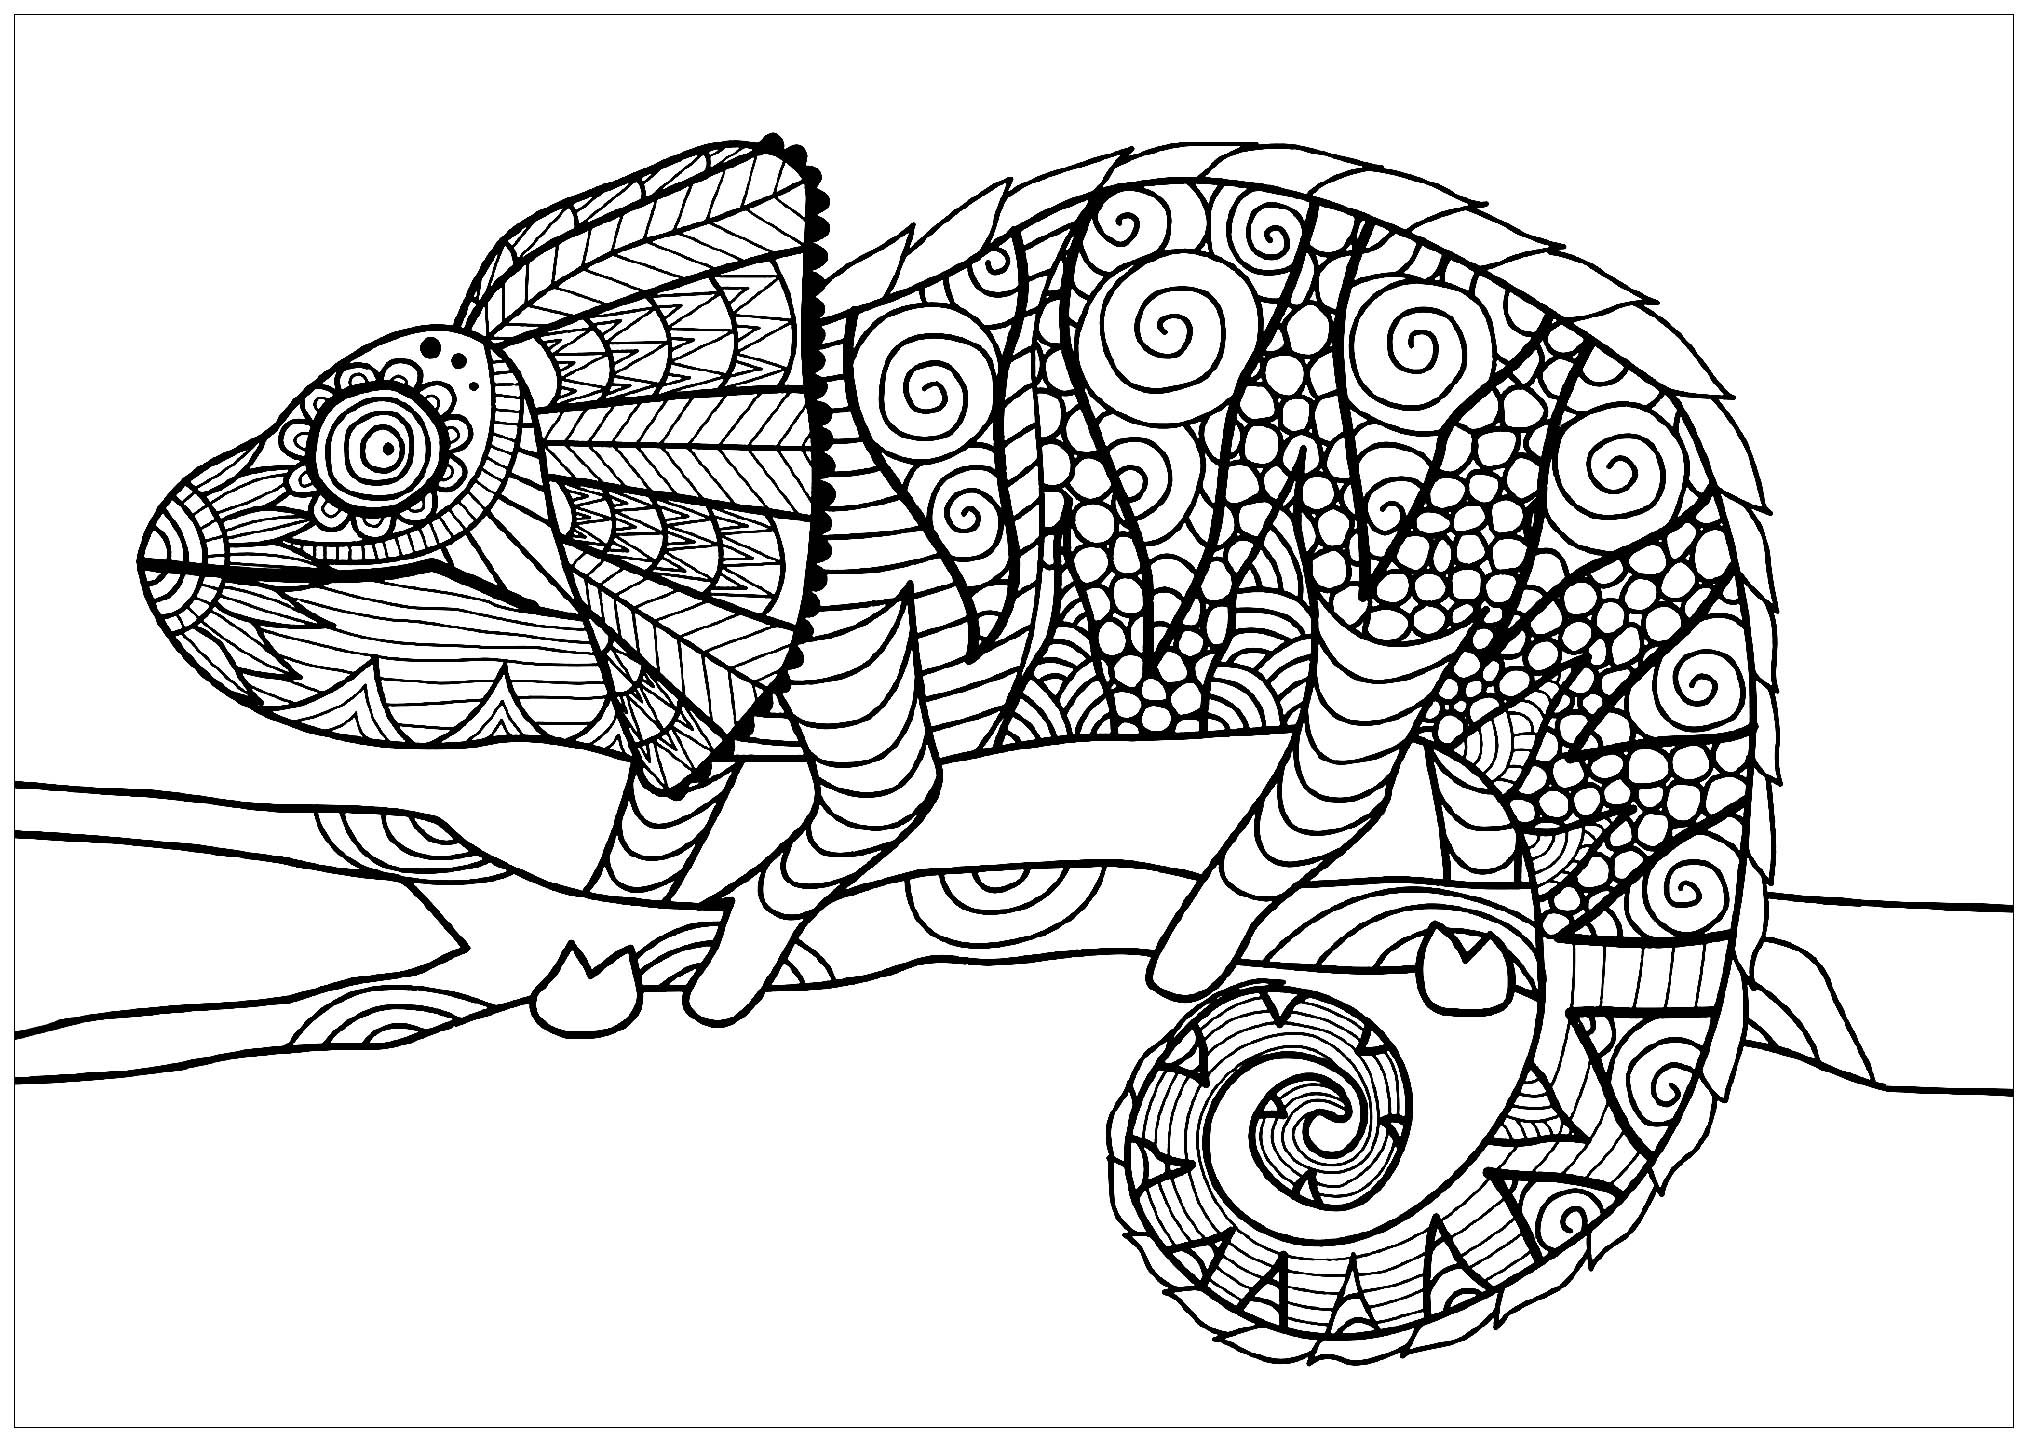 Desenhos para colorir de Camaleões e lagartos para baixar, Artista : Bimdeedee   Fonte : 123rf